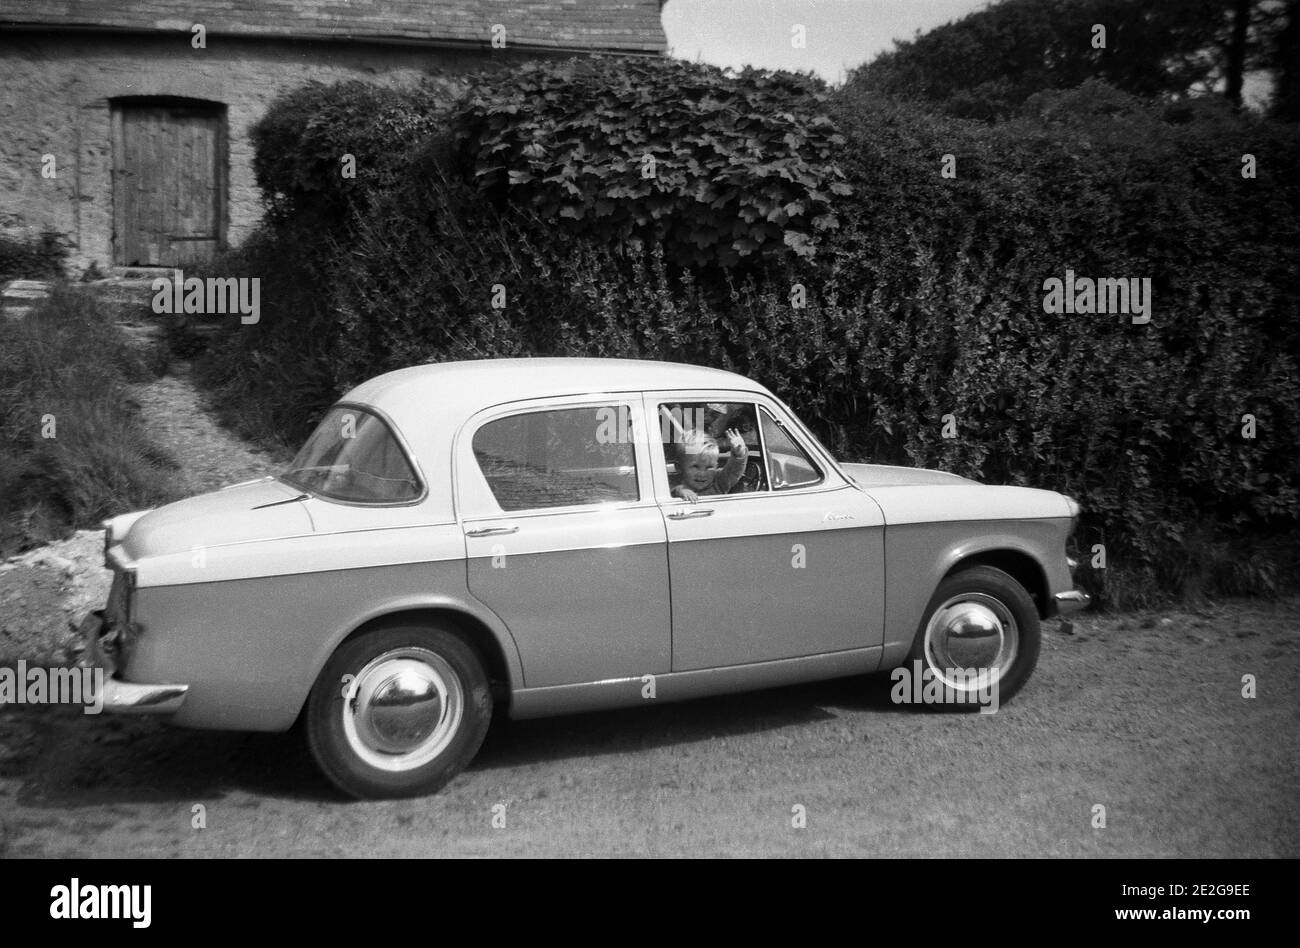 Années 1950, historique, sur une voie rurale, un petit garçon assis dans le siège conducteur d'une voiture familiale, un Hillman Minx, Waving, Angleterre, Royaume-Uni. Fondée en 1907, la société de voitures Hillman était basée près de Coventry et le Hillman Minx était en production de 1931 à 1970, avec de nombreuses versions différentes. La voiture vue ici est peut-être la série Minx V. Hillman, à l'origine un fabricant de vélos, a été repris par les frères Rootes en 1928. Banque D'Images